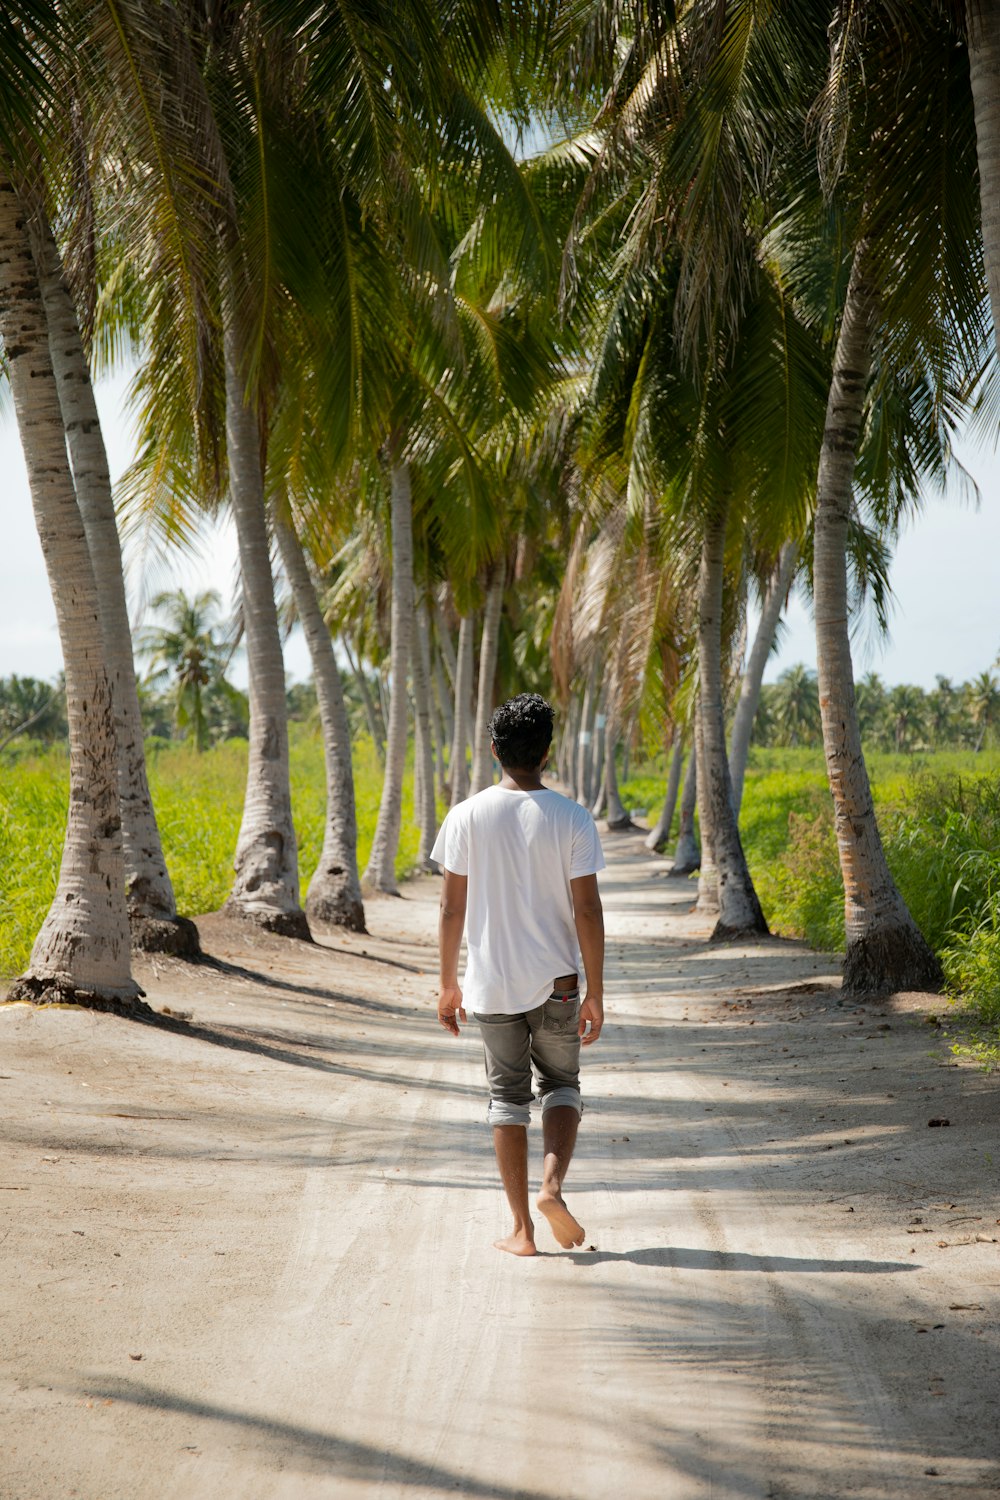 코코넛 나무 사이의 오솔길을 걷는 남자